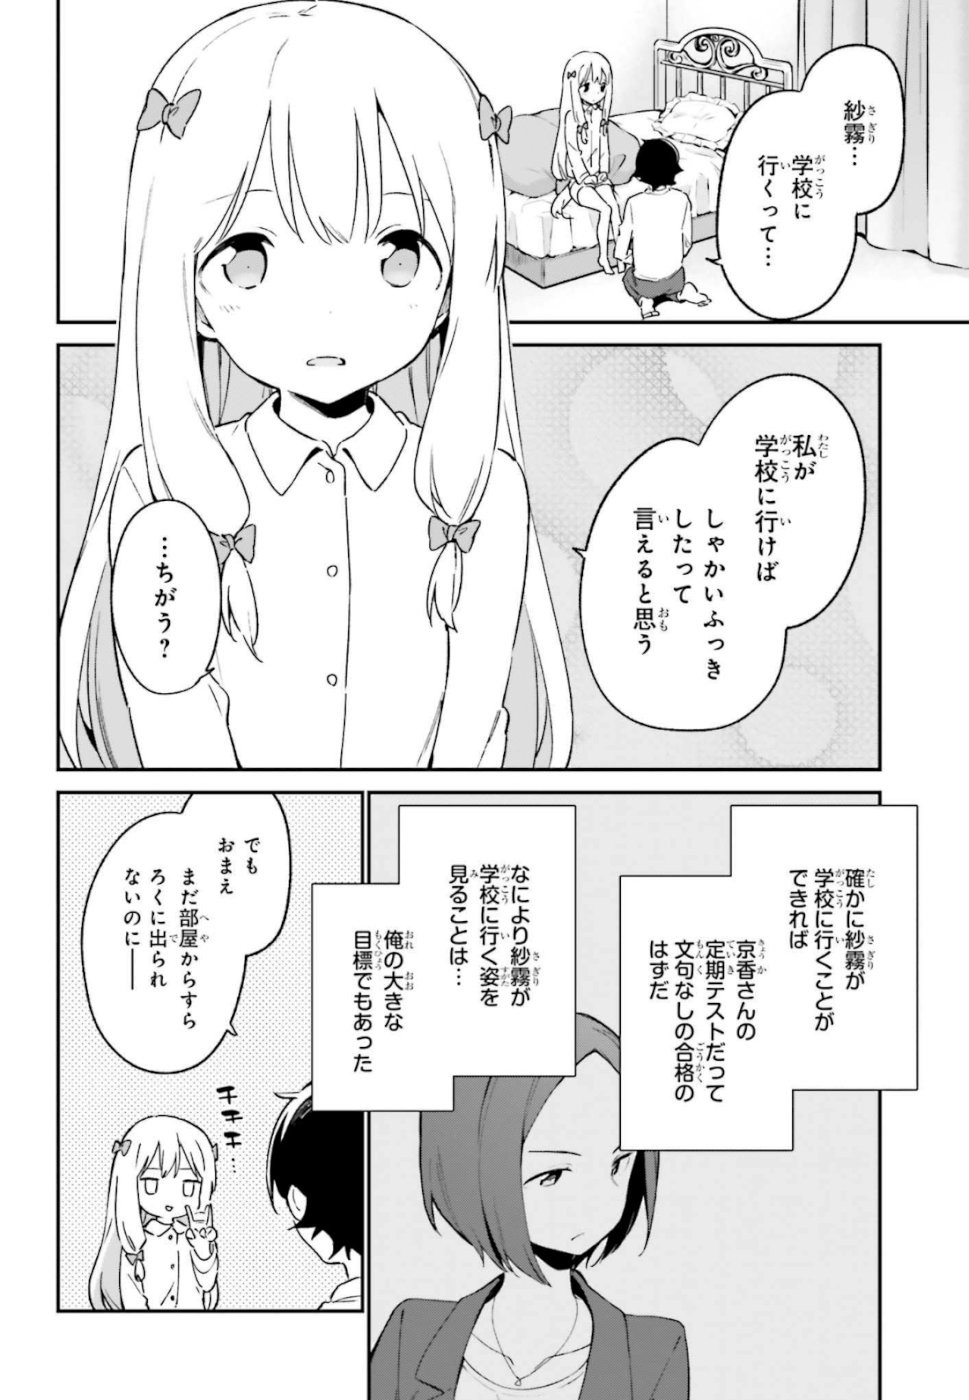 Ero Manga Sensei - Chapter 62 - Page 2